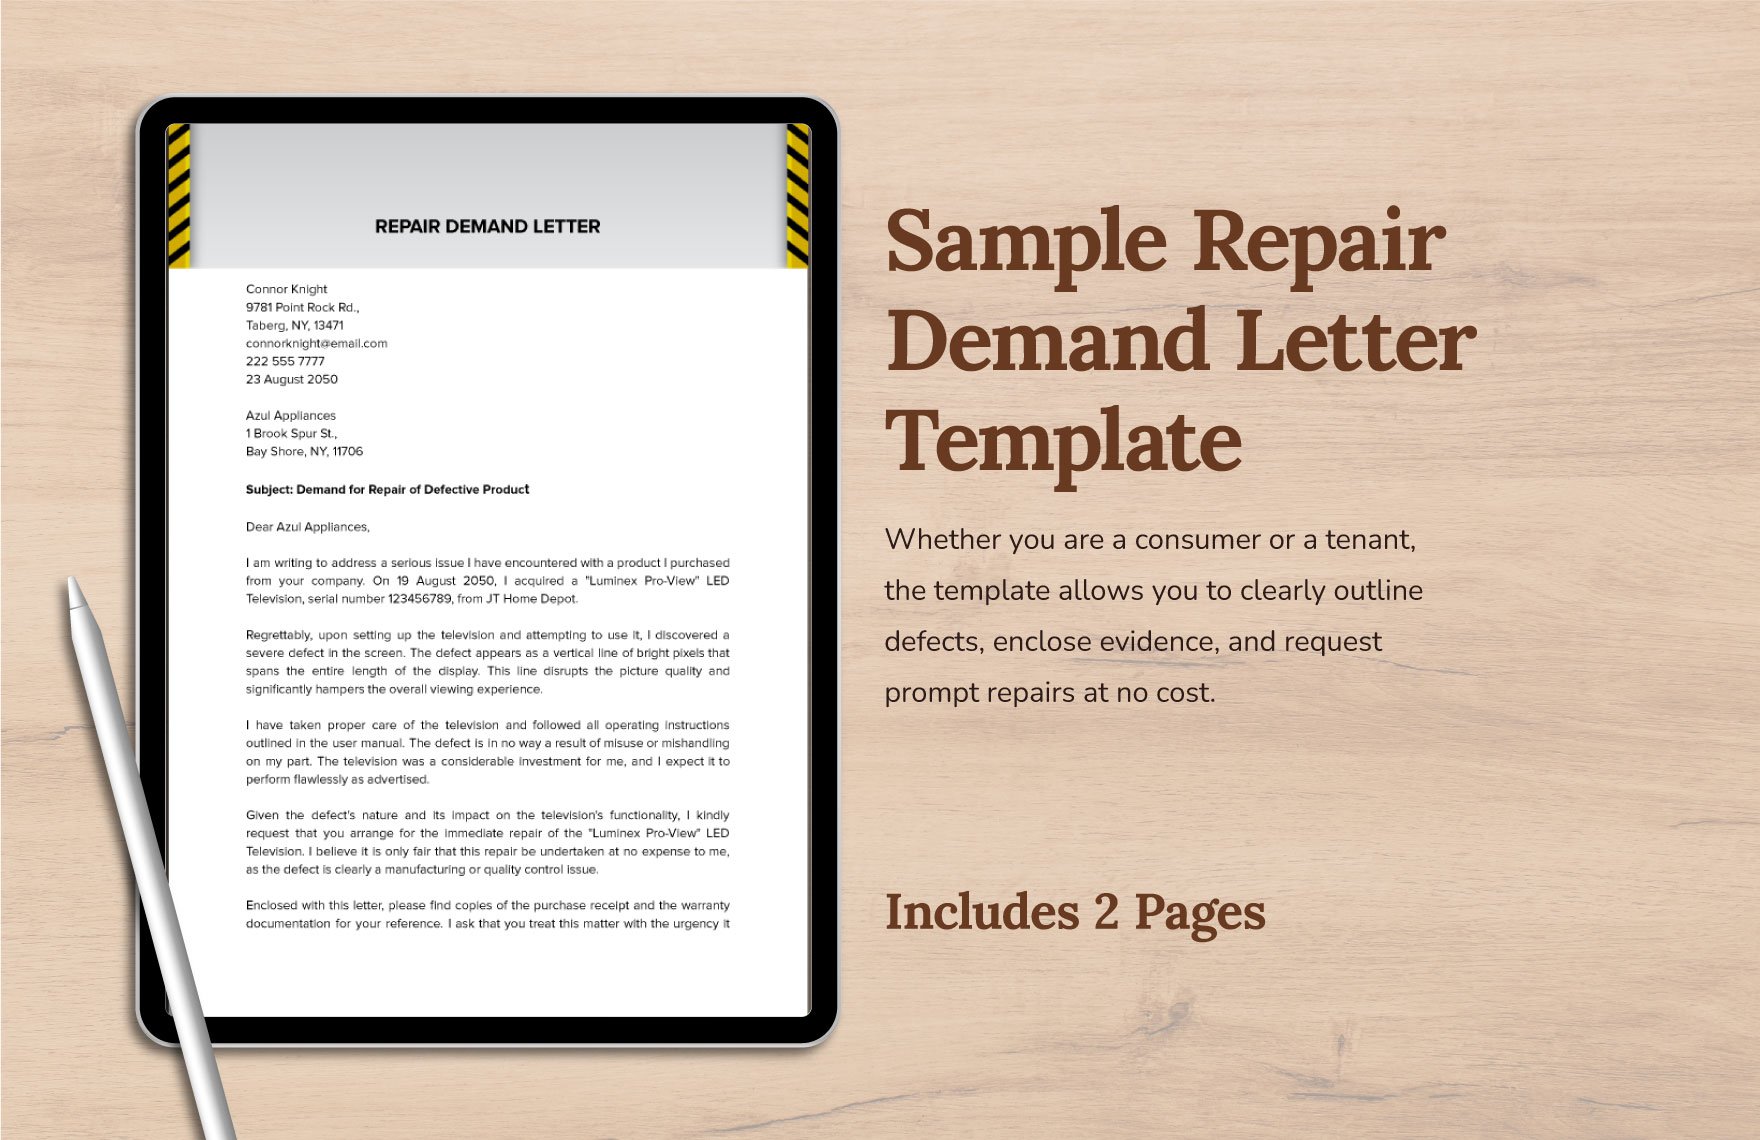 Sample Repair Demand Letter Template